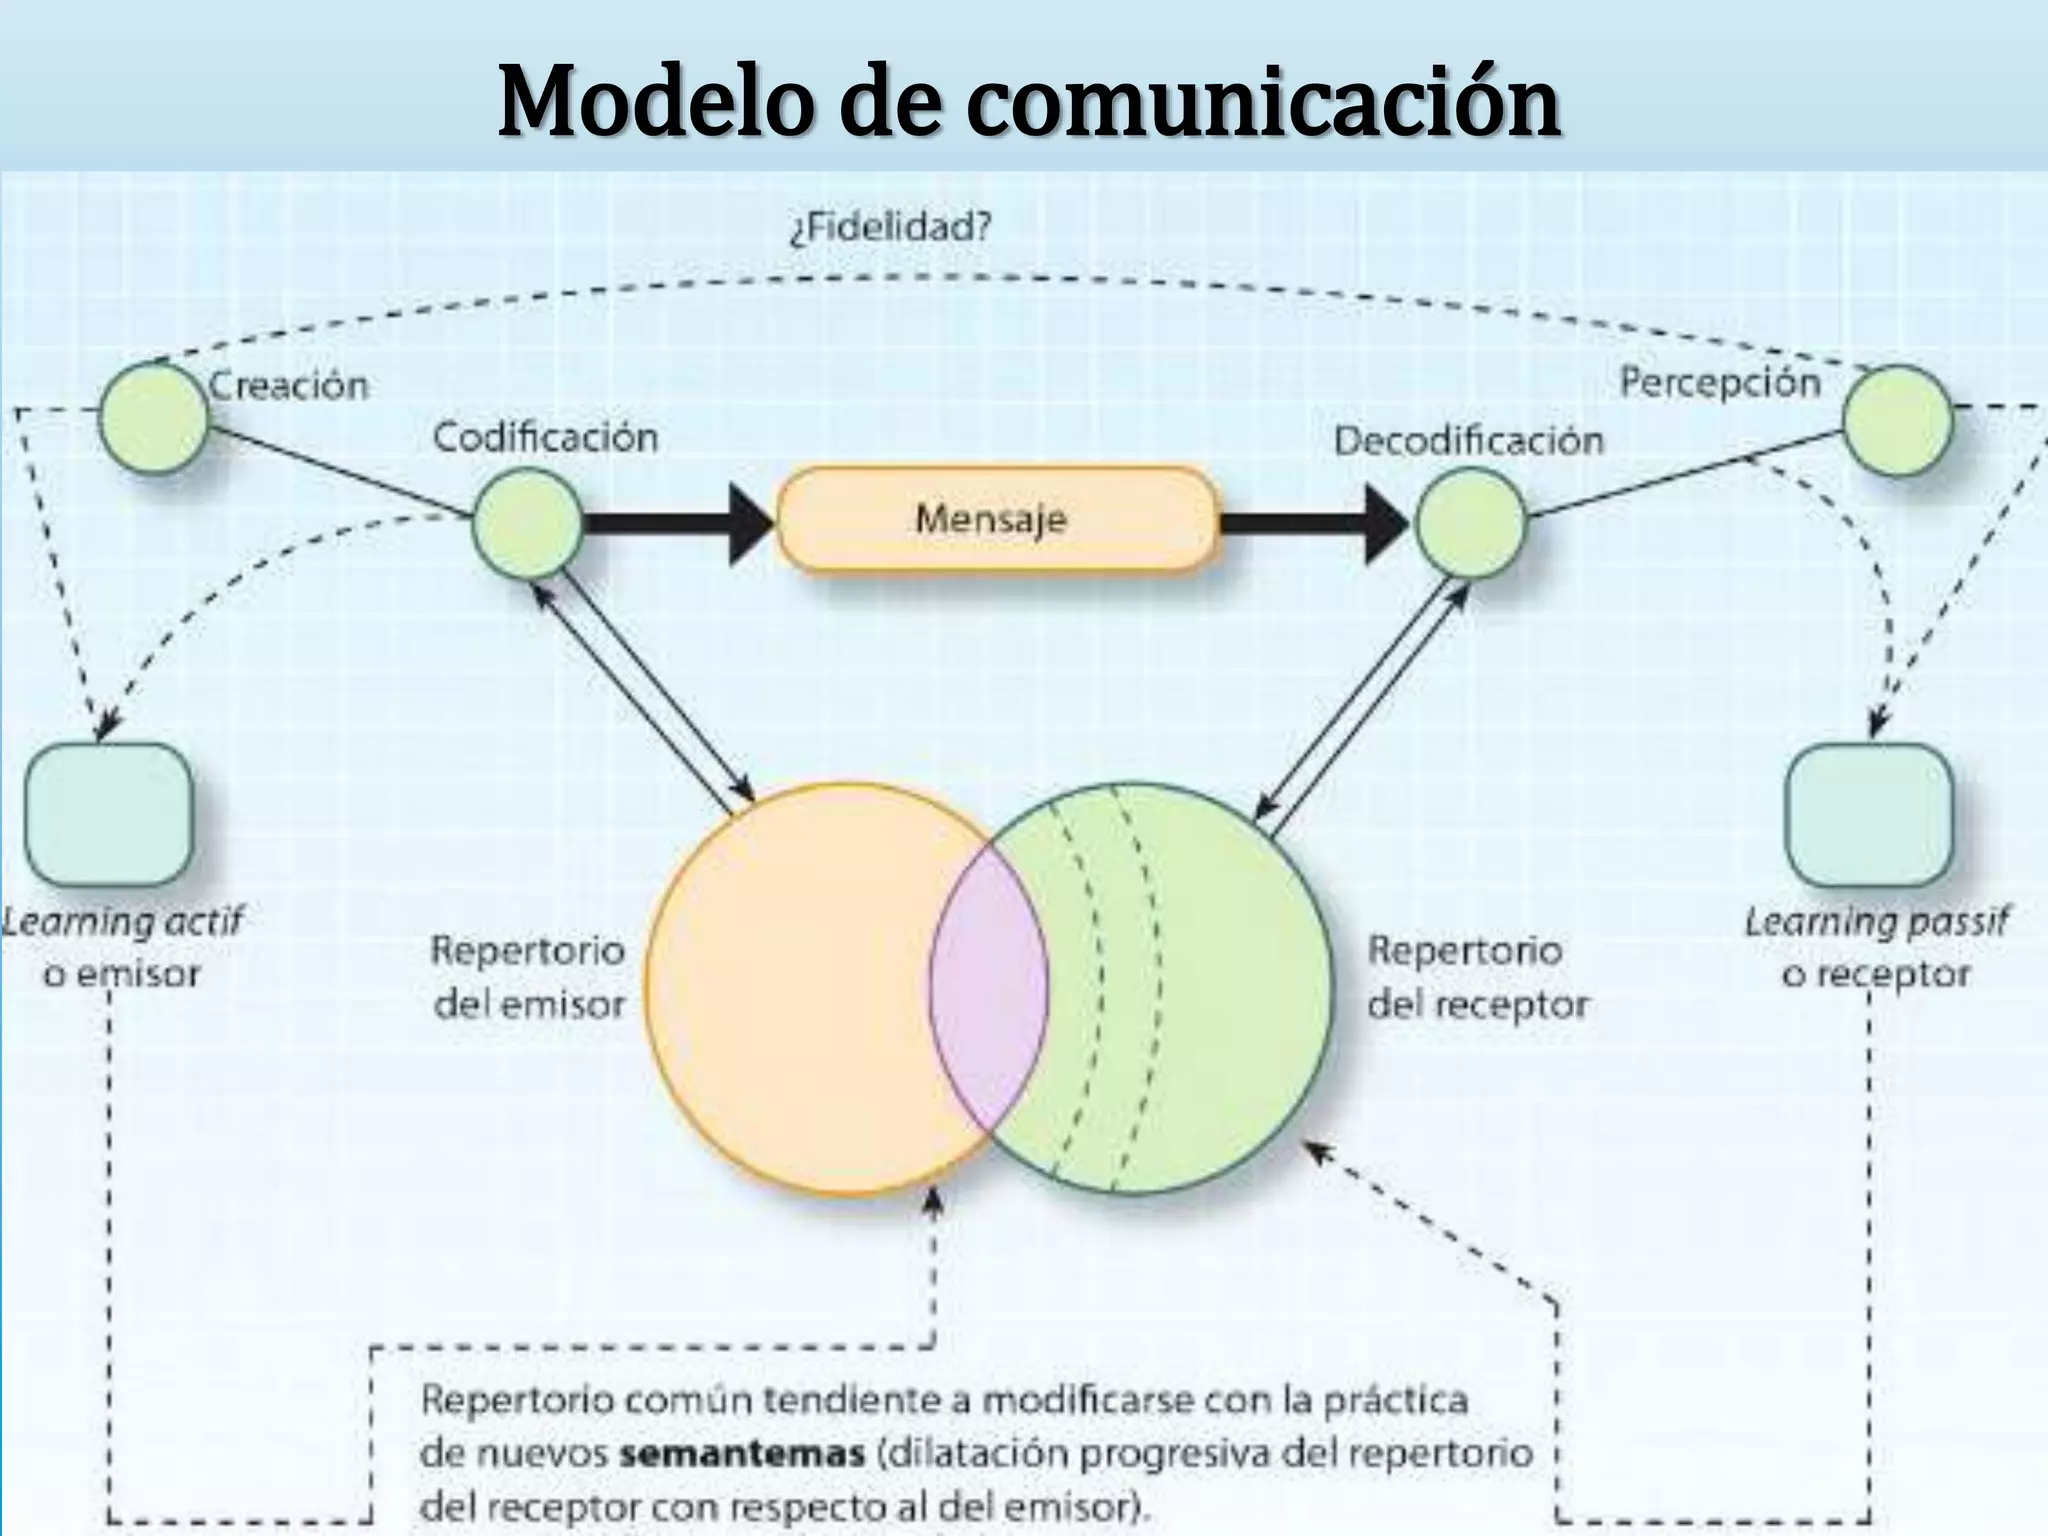 Presentacion - Modelo de comunicacion de Abraham A. Moles